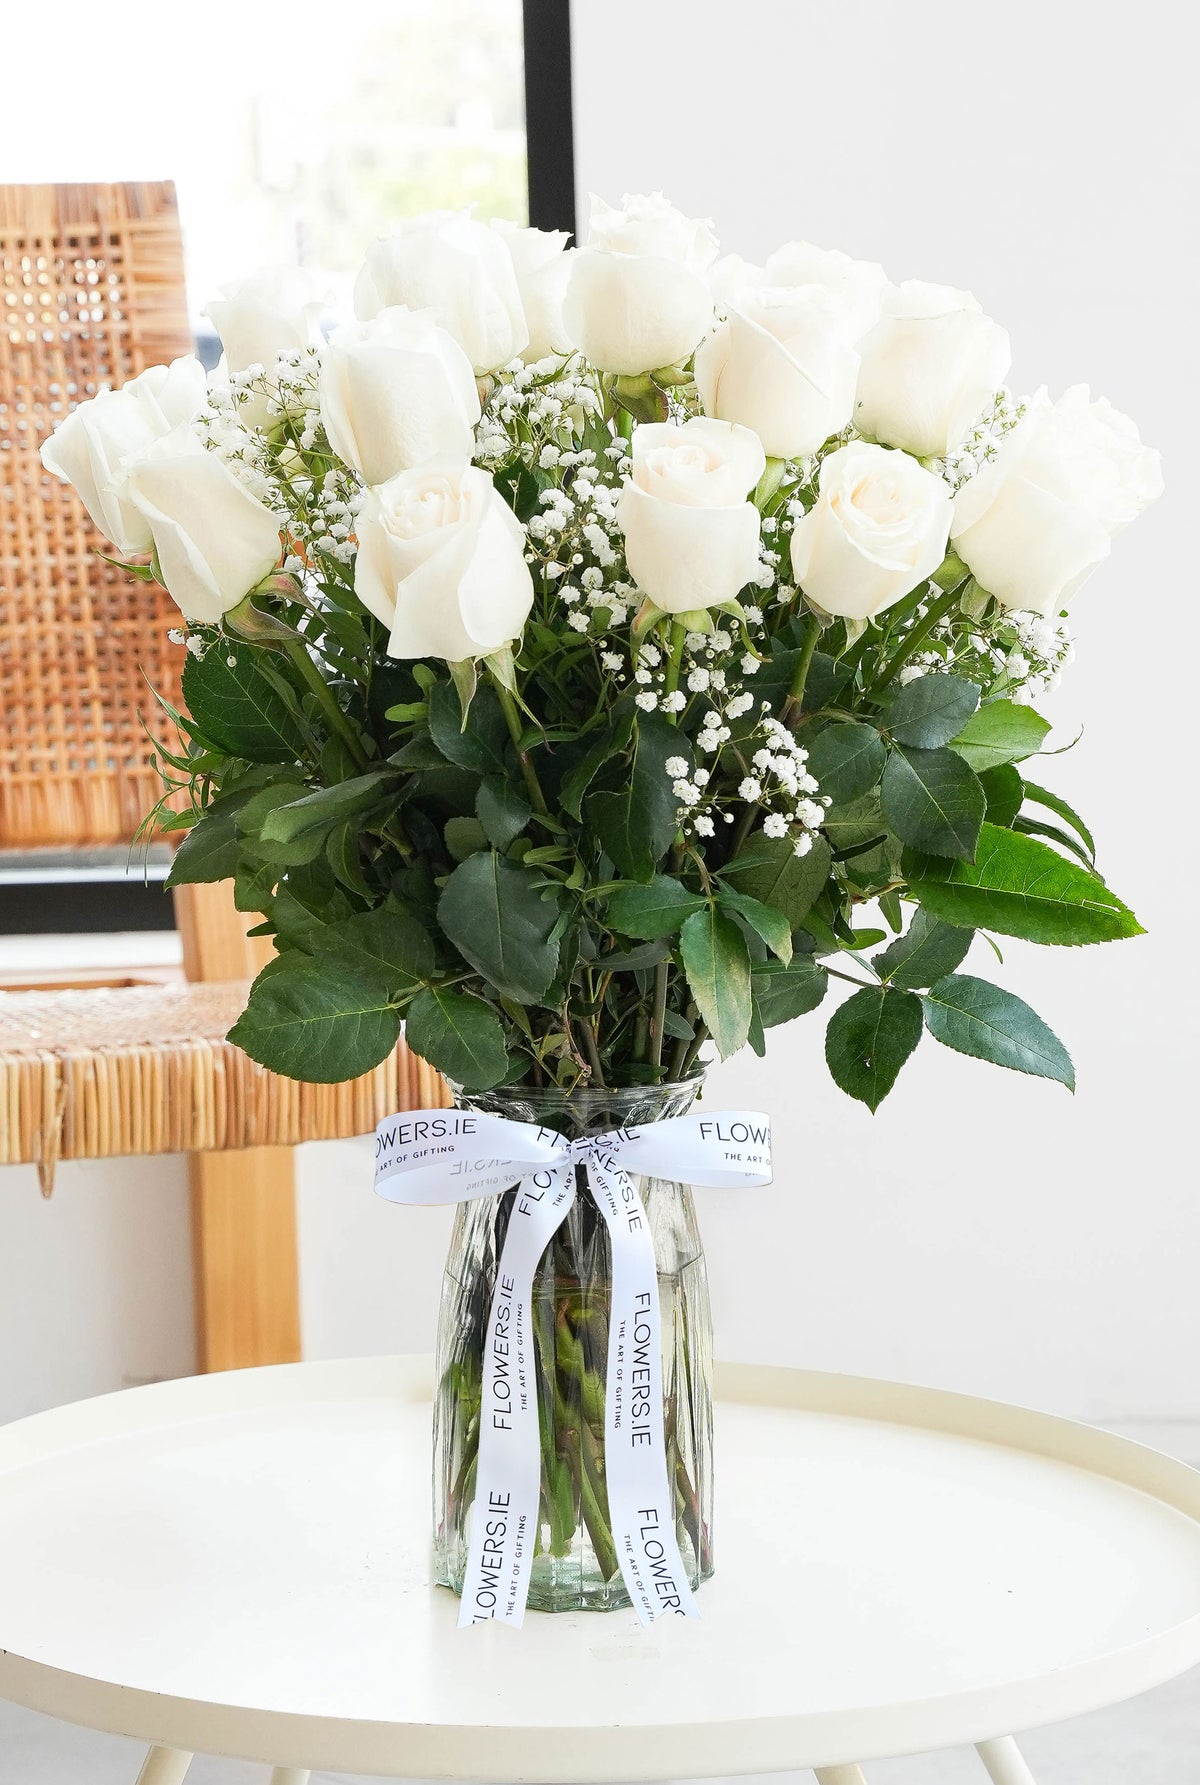 24 Long Stem White Roses - Vase